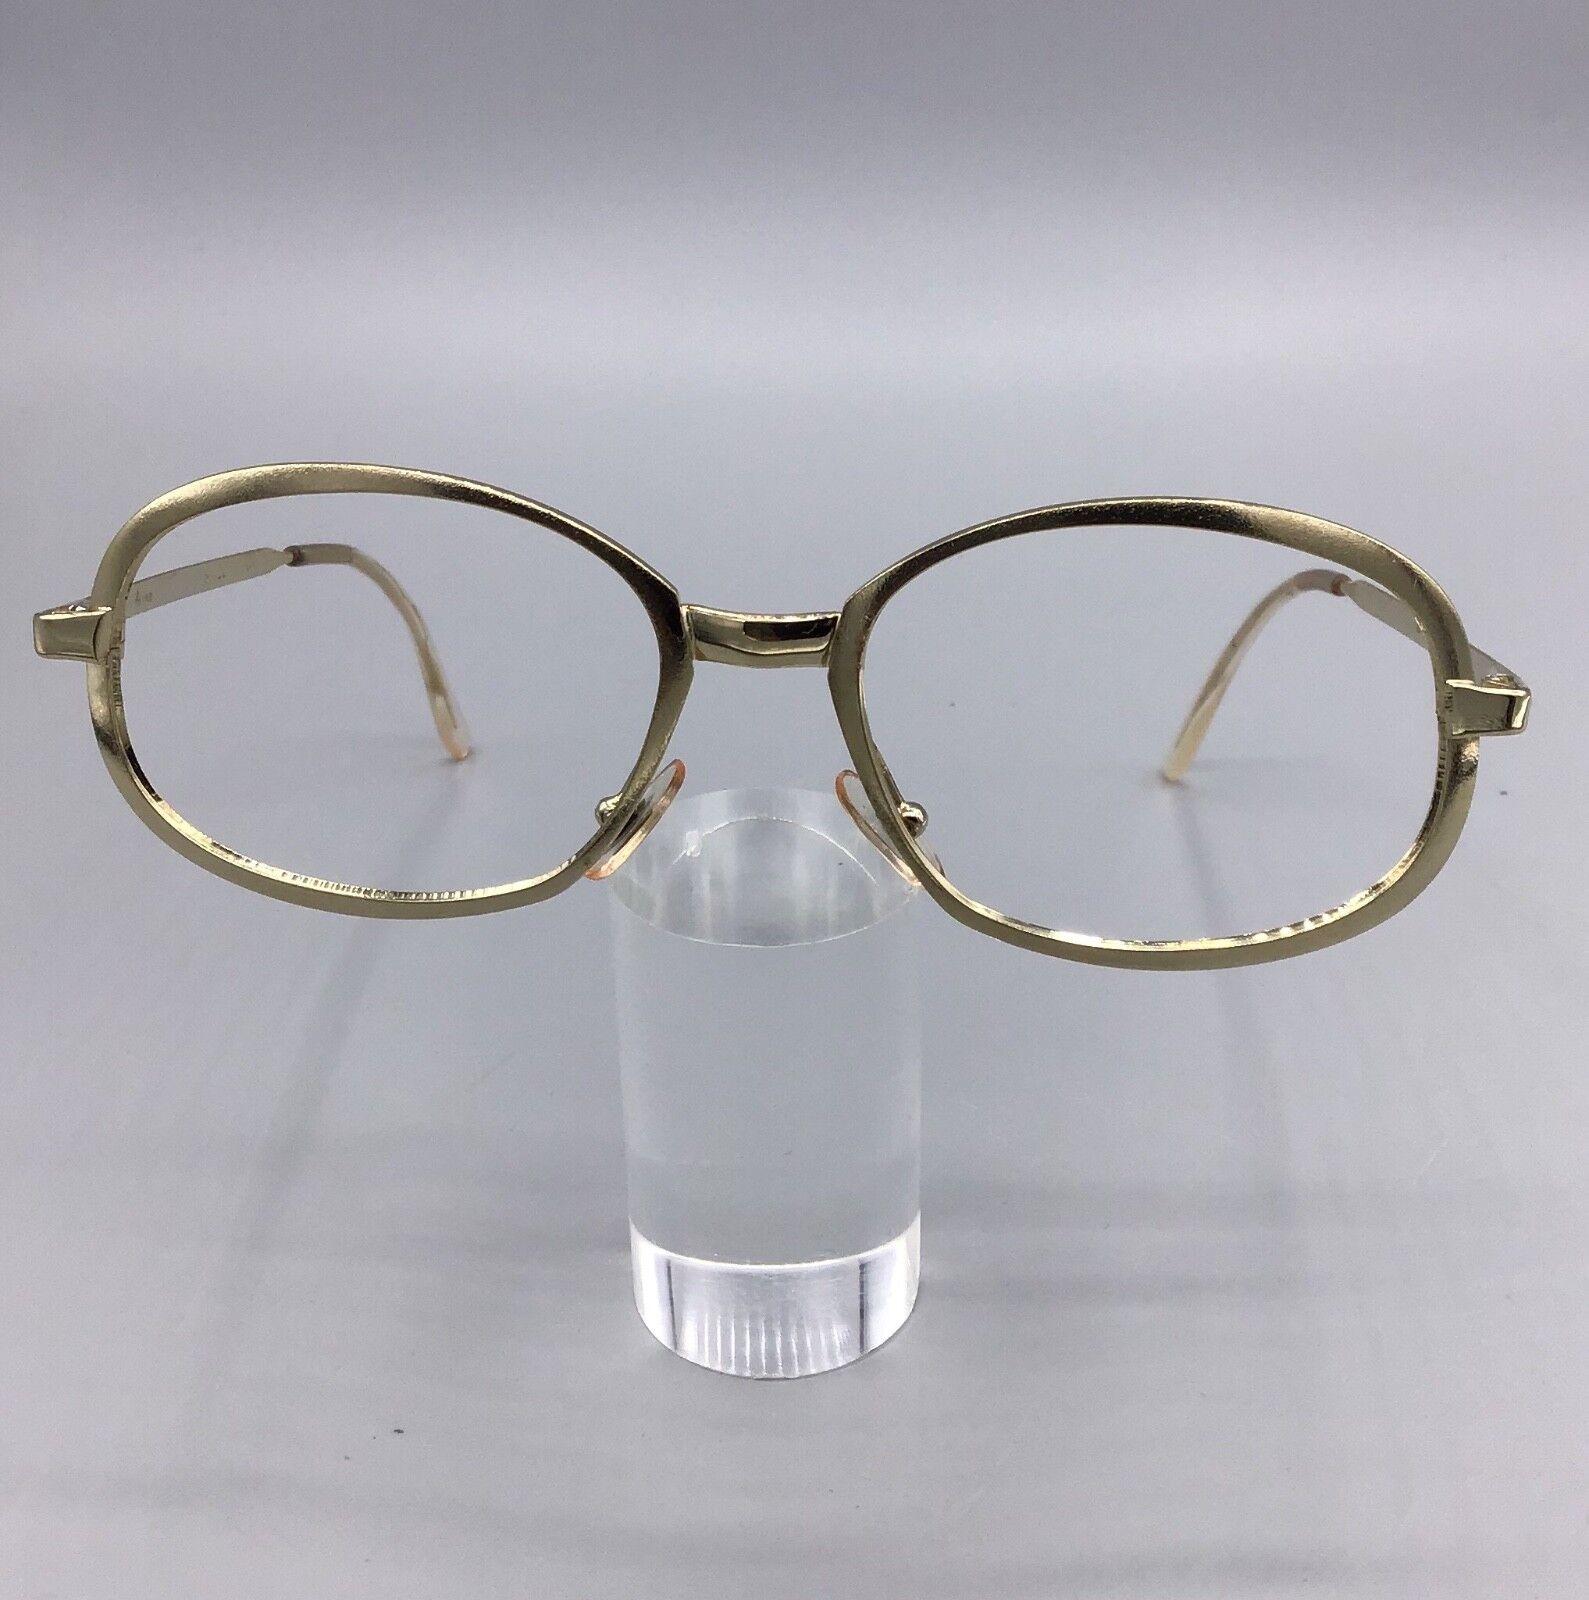 Rima Britt occhiale vintage Eyewear lunettes brillen gold oro laminated